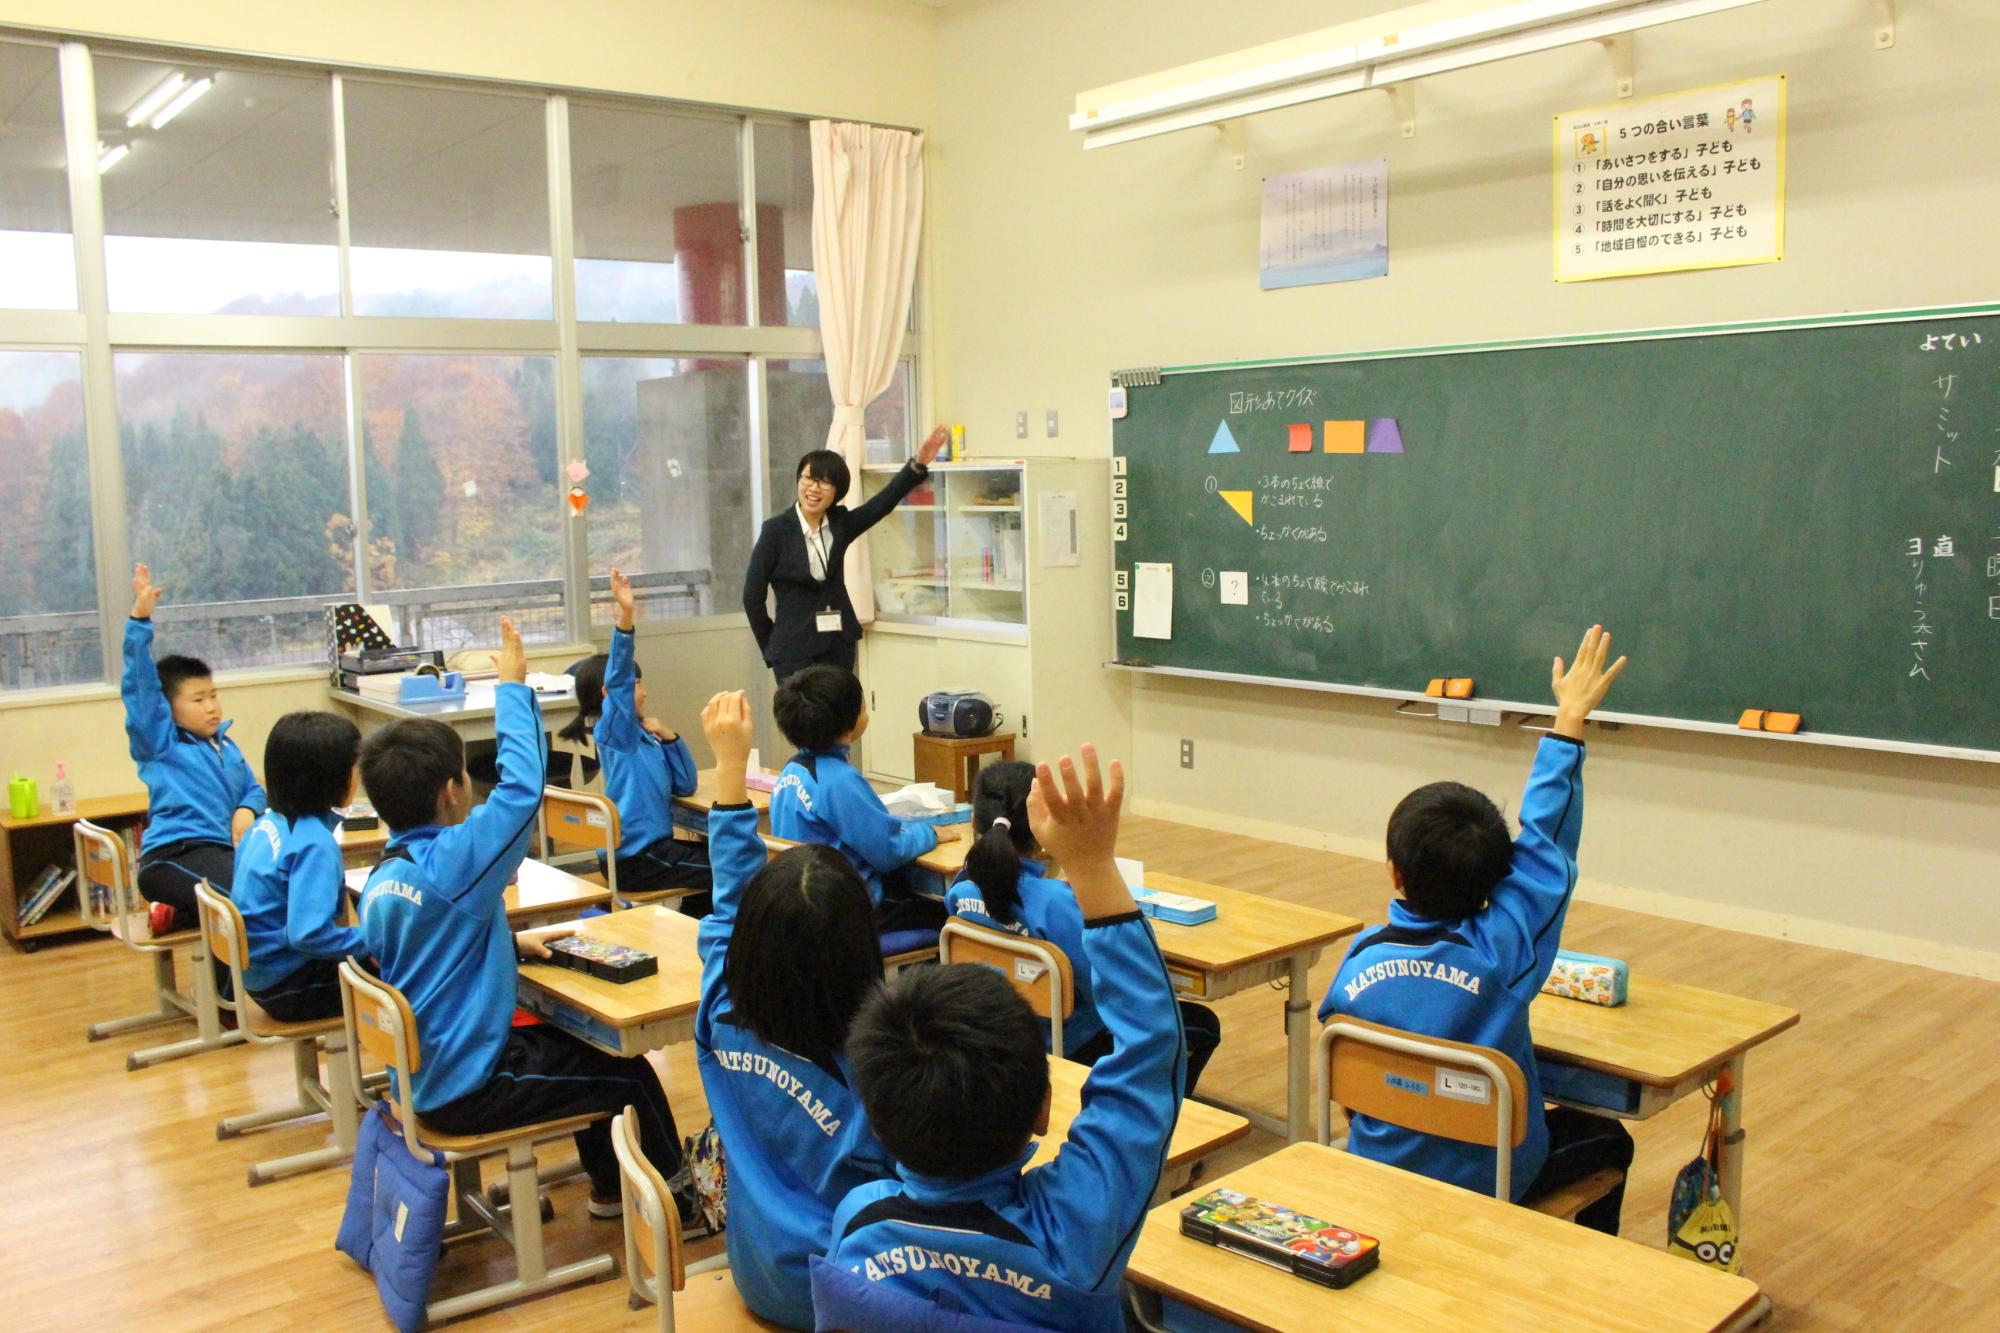 教室で黒板に向かい挙手をしている大勢の小学生